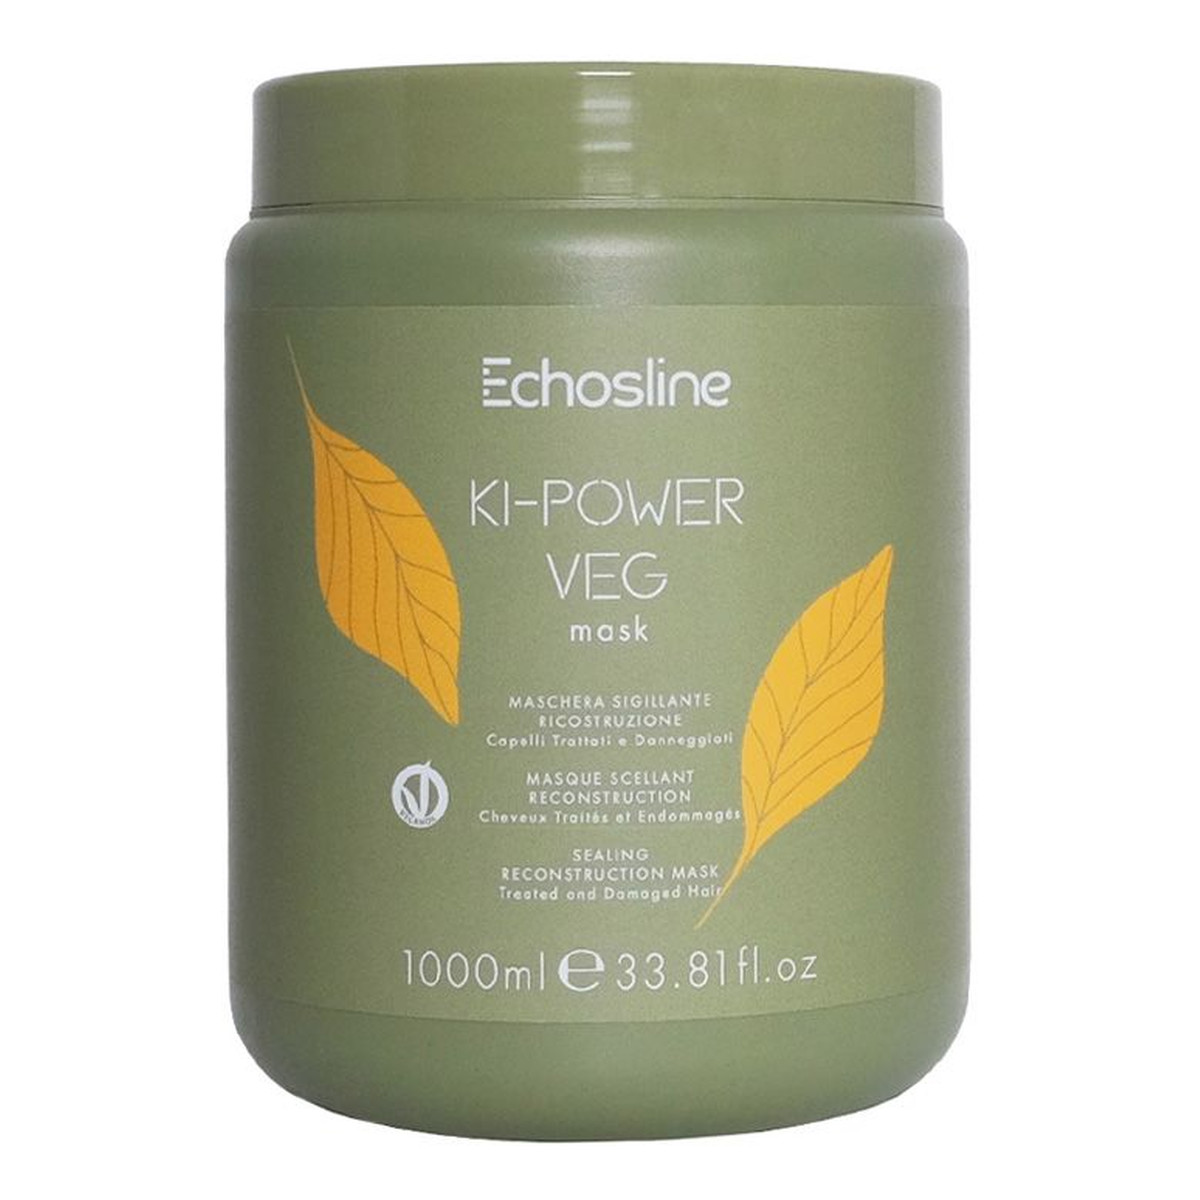 Echosline Ki-power veg mask intensywnie odbudowująca maska do włosów 1000ml